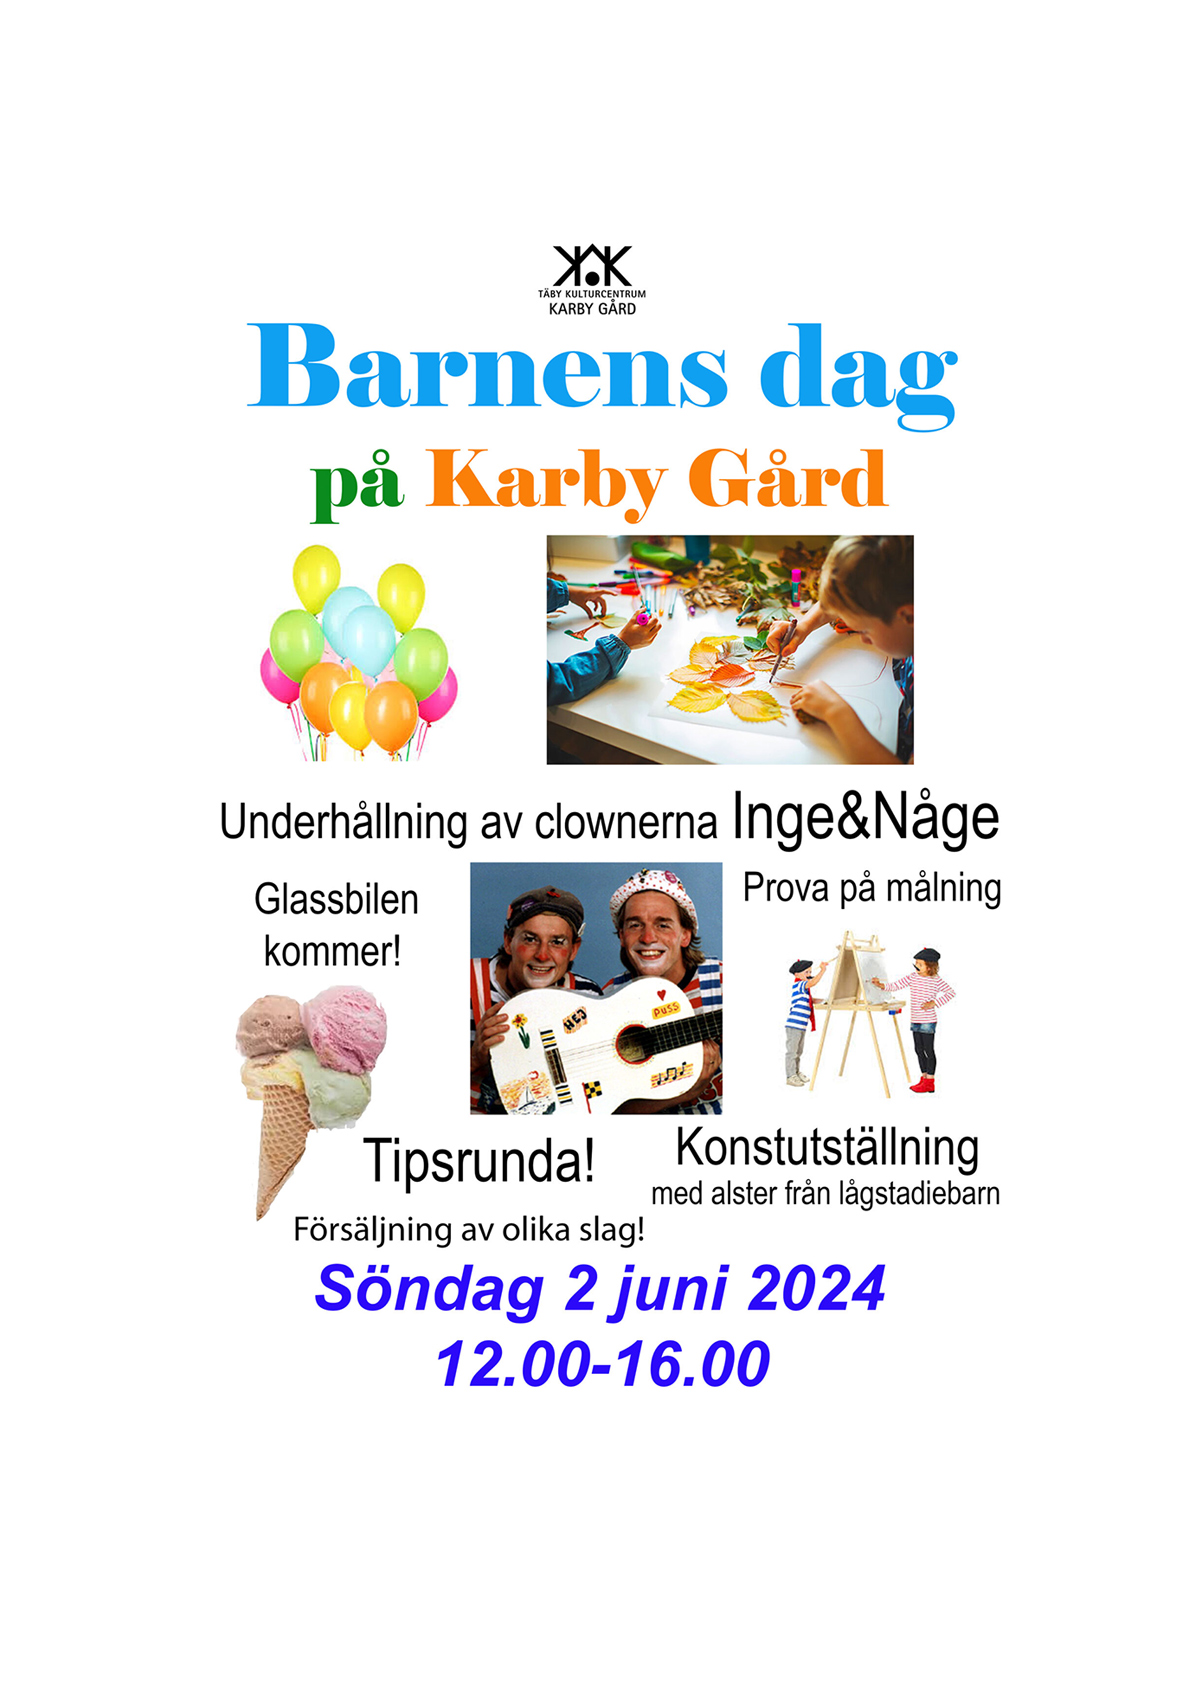 Barnens Dag Karby Gård